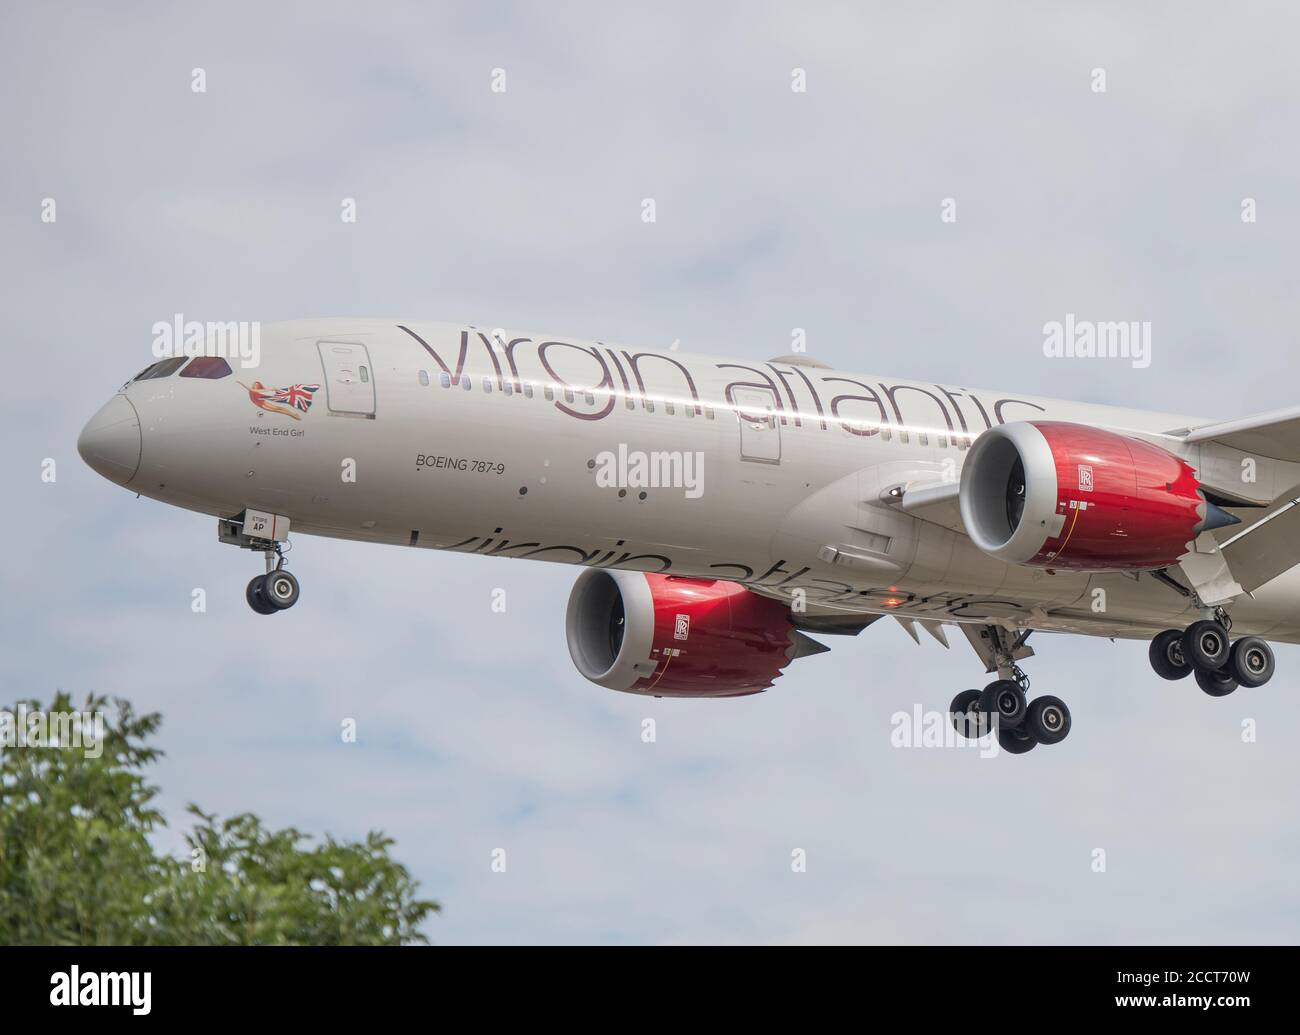 Flughafen Heathrow, London, Großbritannien. 24. August 2020. Virgin Atlantic Boeing 787 Dreamliner G-VMAP 'West End Girl' aus Shanghai auf finaler Landebahn 27L Stockfoto